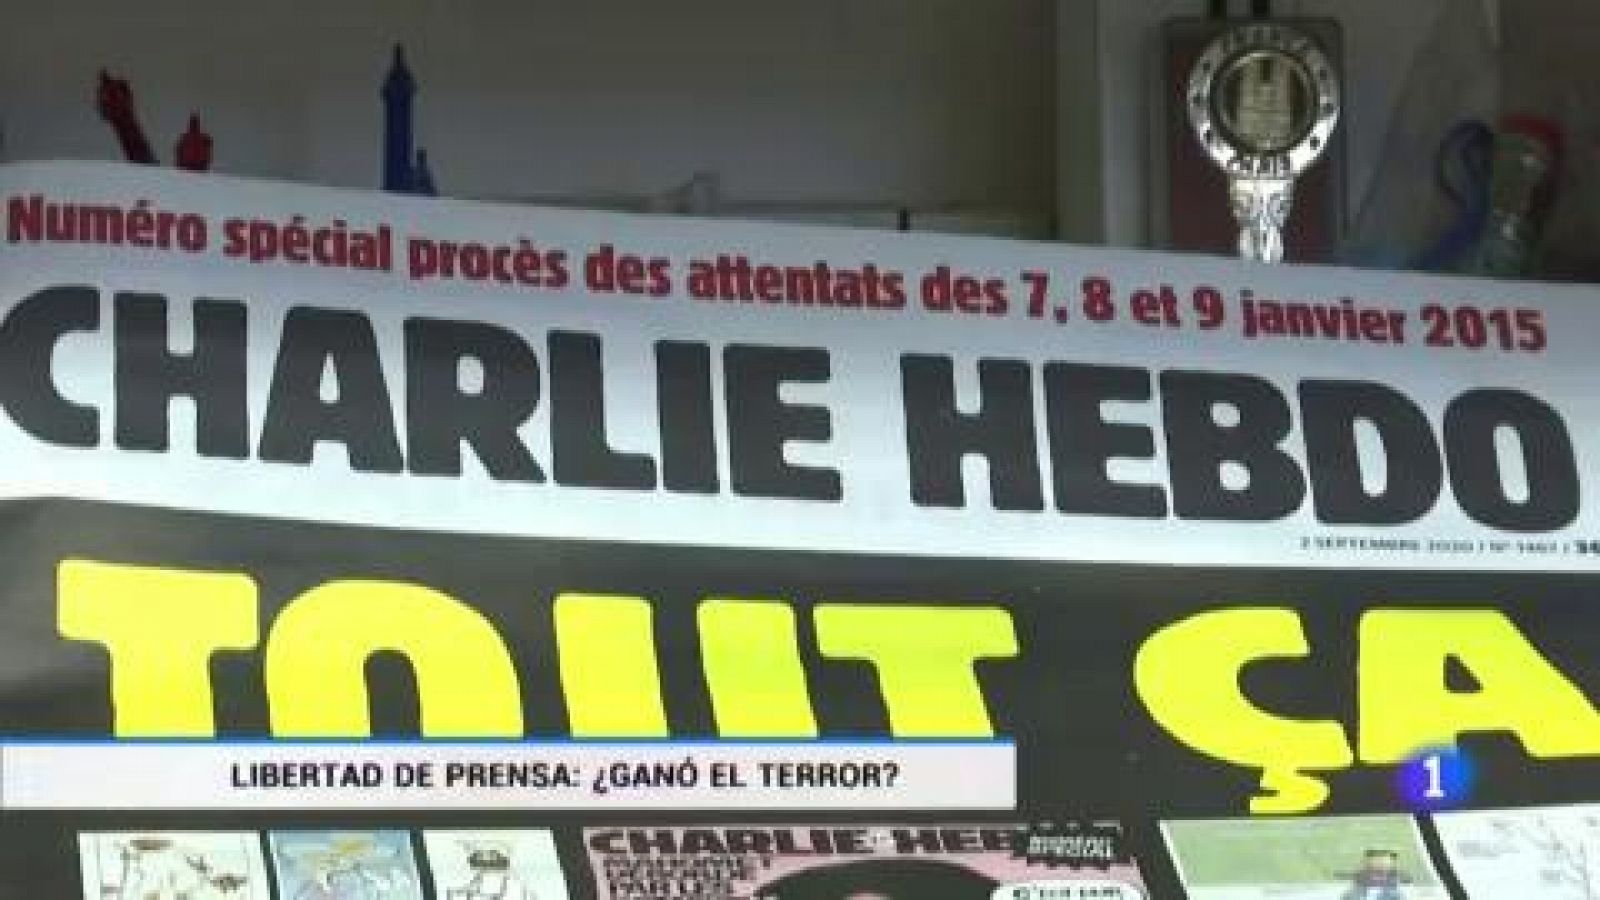 La libertad de prensa tras los atentados de 'Charlie Hebdo': ¿Ganó el terror?